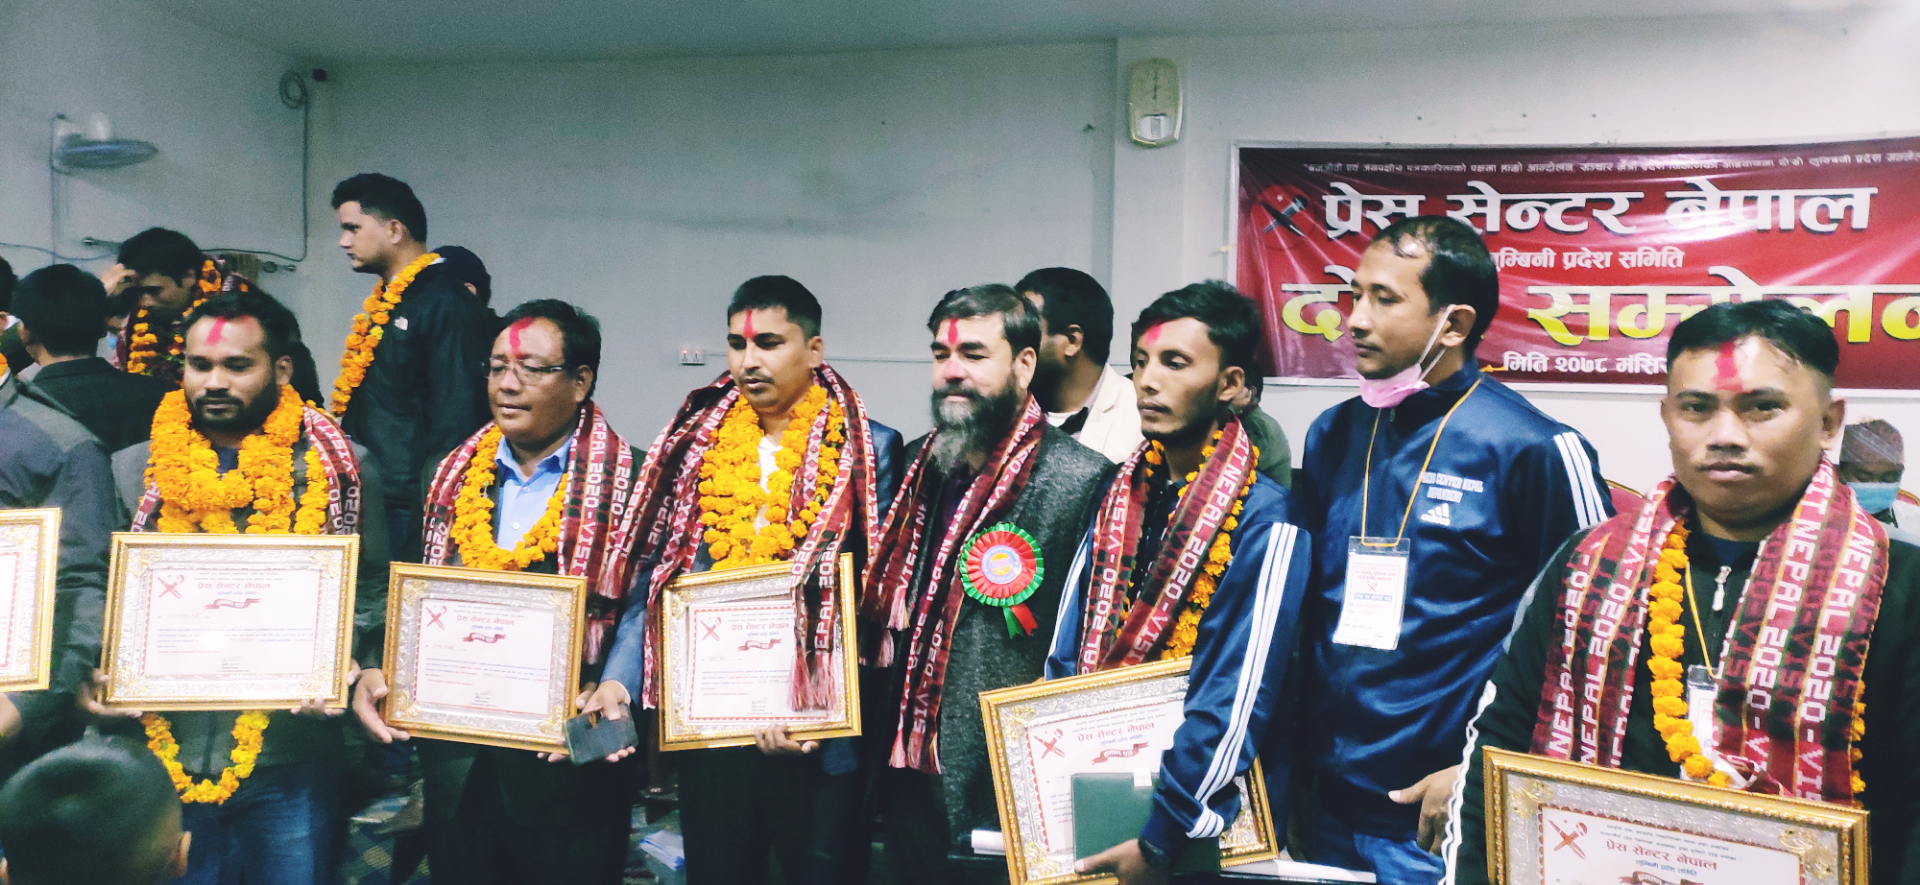 प्रेस सेन्टर नेपाल लुम्बिनी प्रदेश अधिवेशन सम्पन्न, मानसिंह विकको नेतृत्वमा सर्वसम्मत प्रदेश समिति गठन